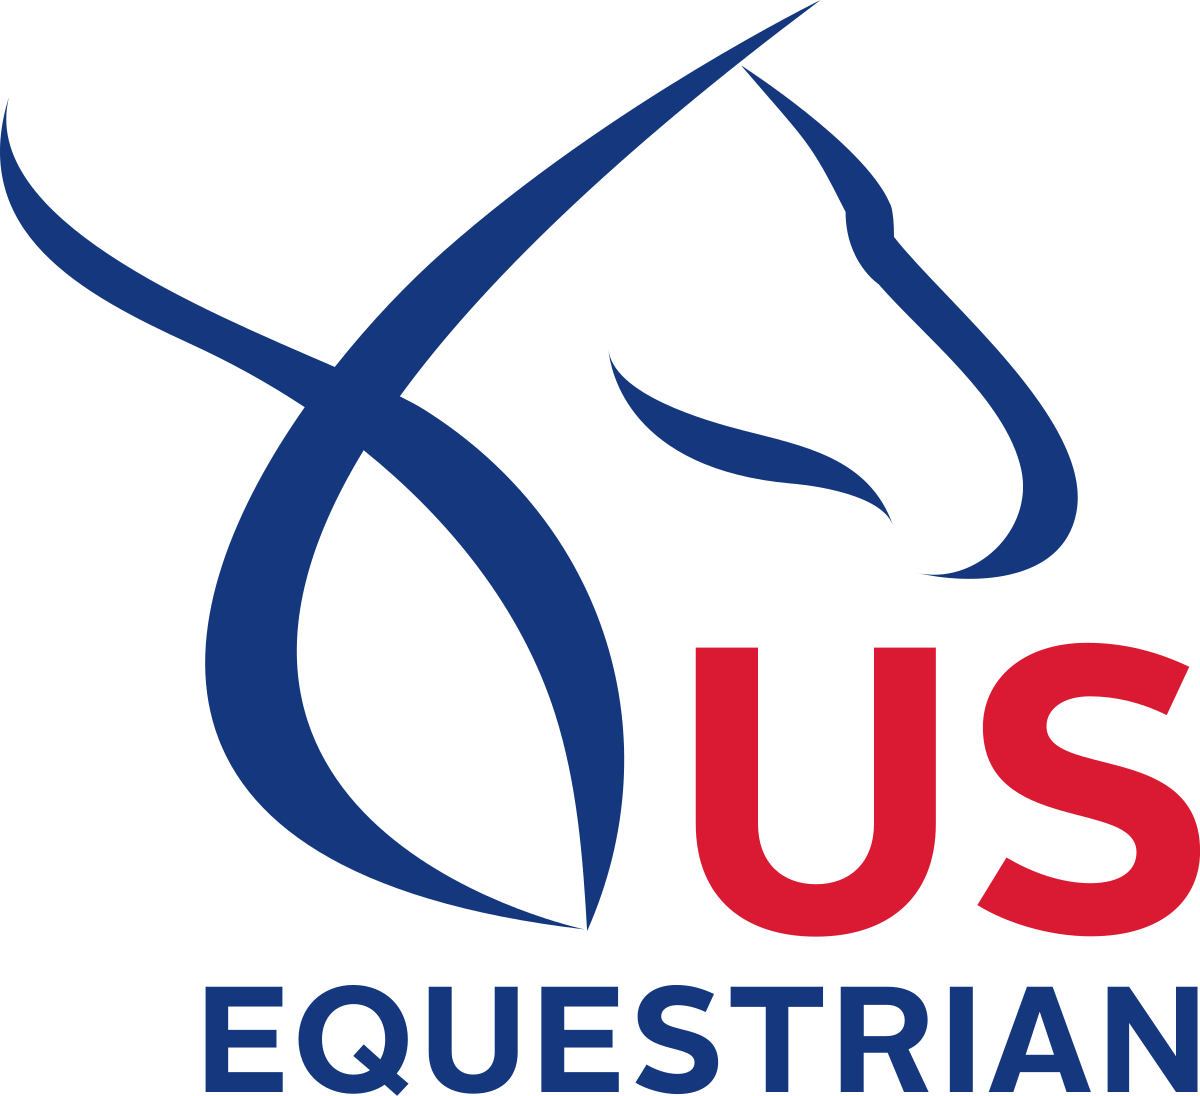 United States Equestrian Federation Wikipedia Cloth - Us Equestrian Logo (1200x1096)